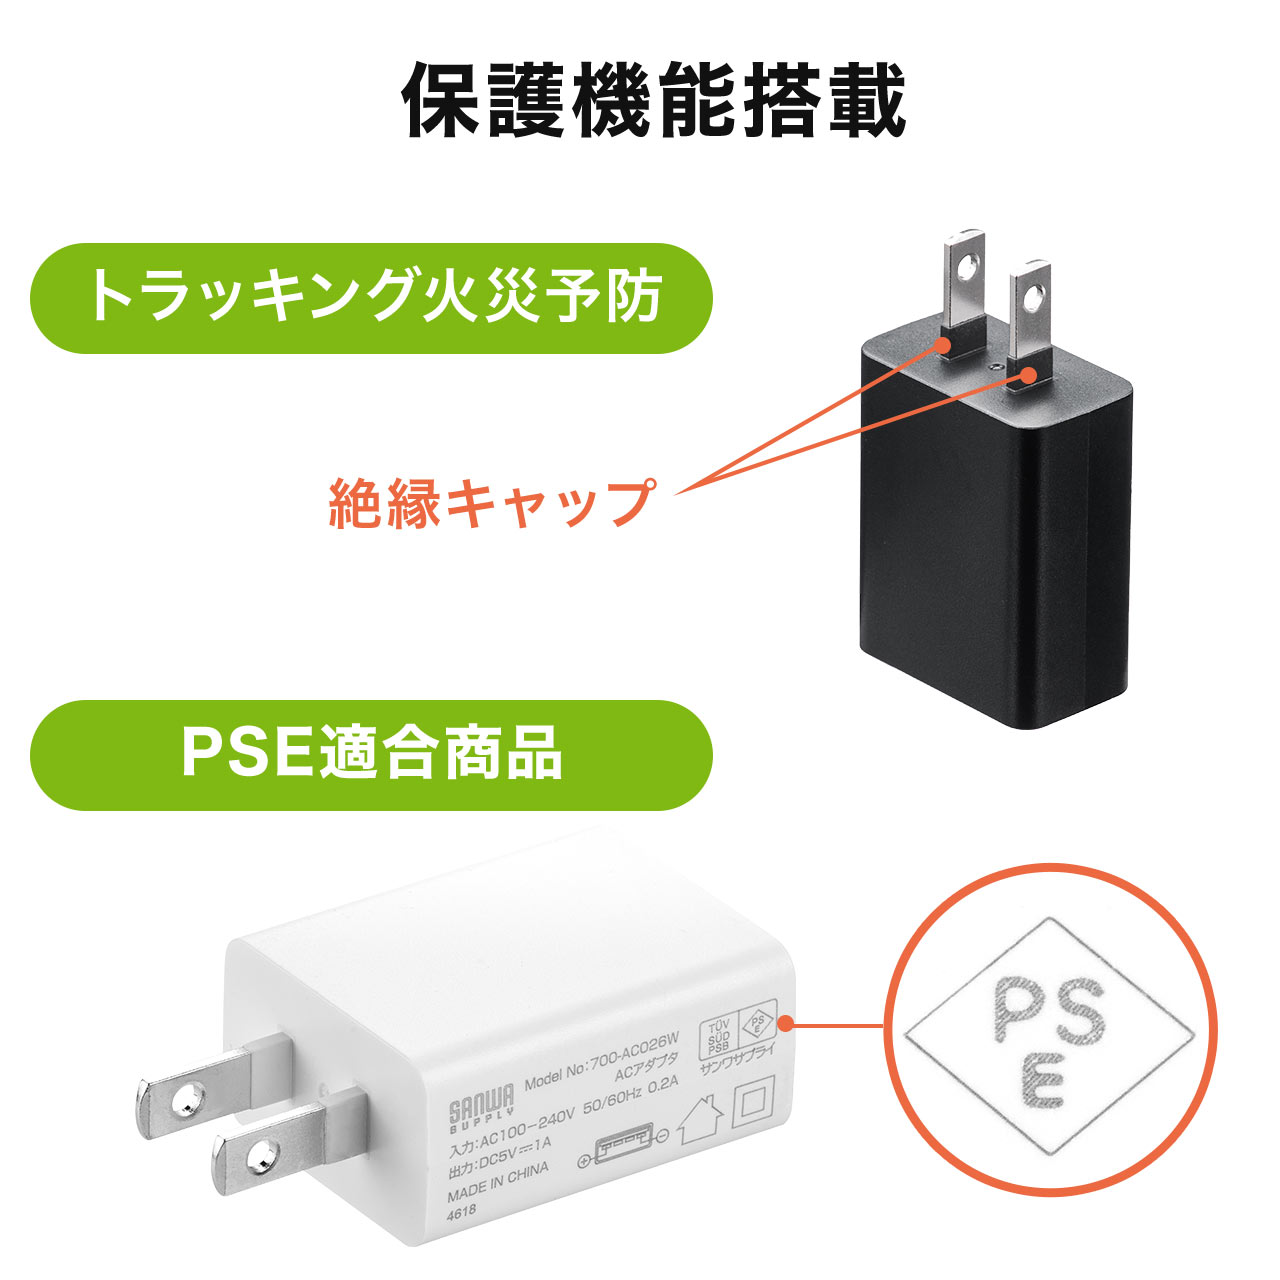 【10個セット】USB充電器 1ポート 1A コンパクト PSE取得 USB-ACアダプタ iPhone充電対応 ブラック コンパクト 小型 絶縁キャップ 702-AC026-10BK